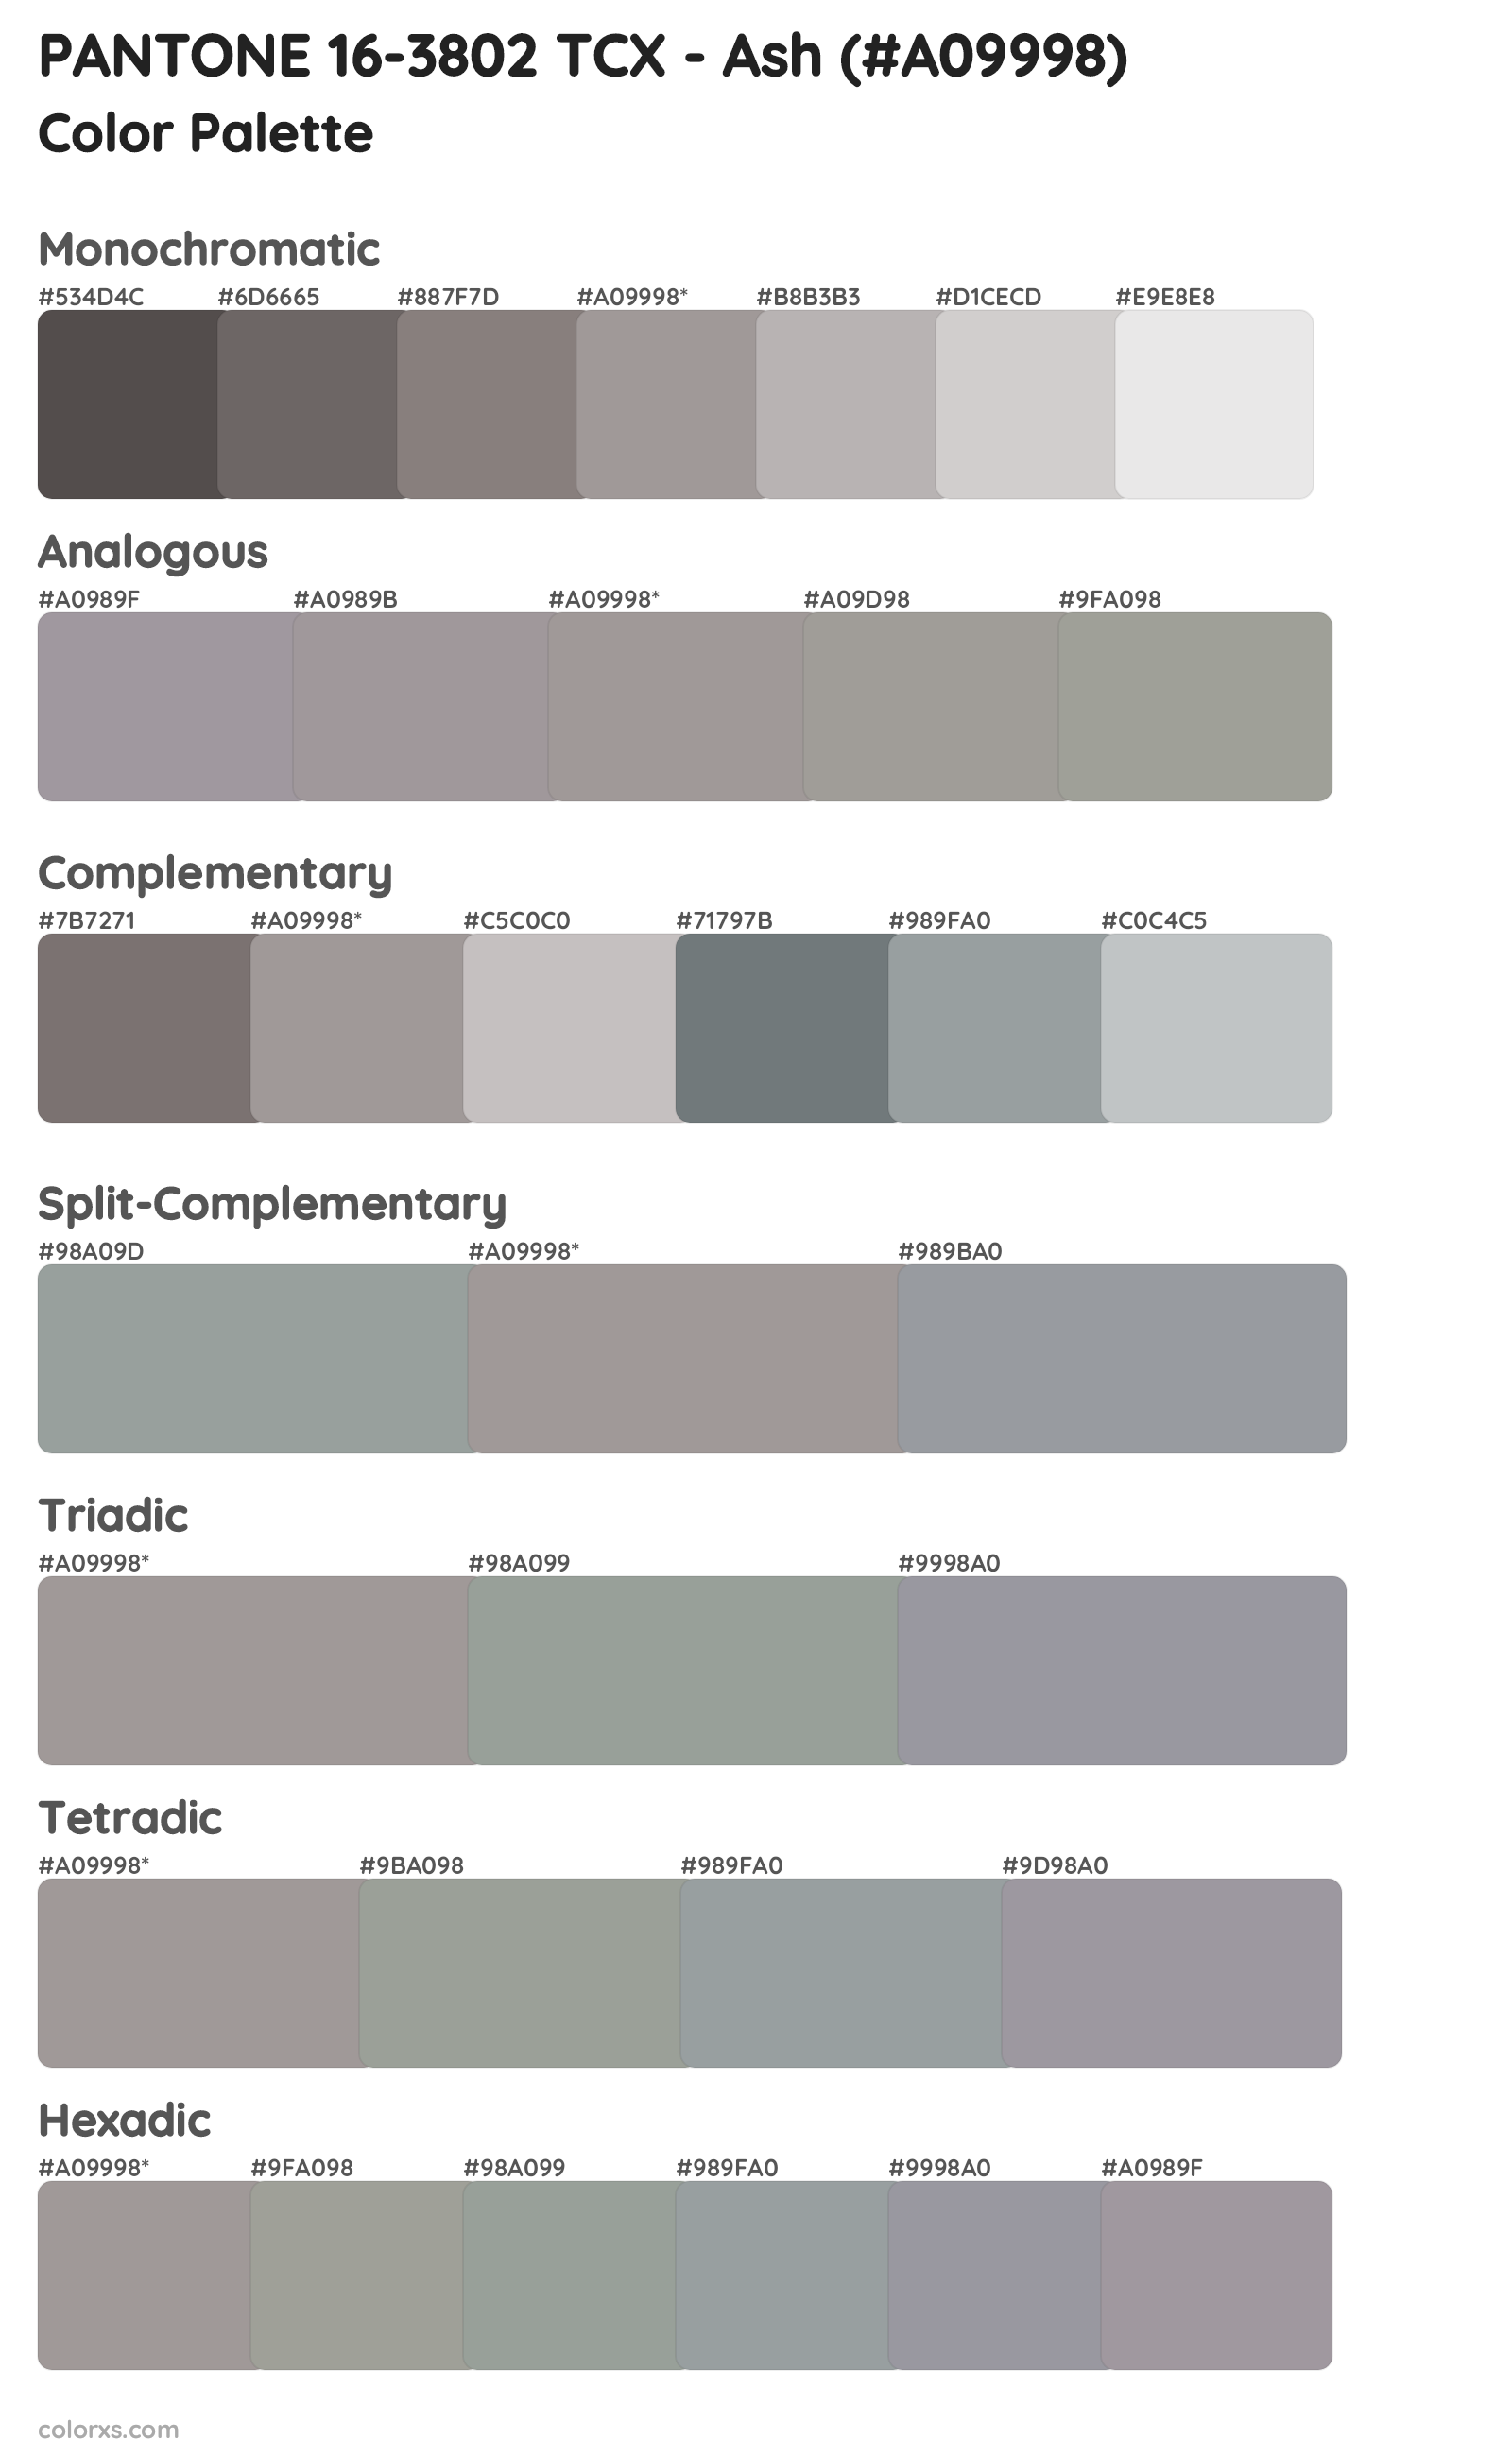 PANTONE 16-3802 TCX - Ash Color Scheme Palettes